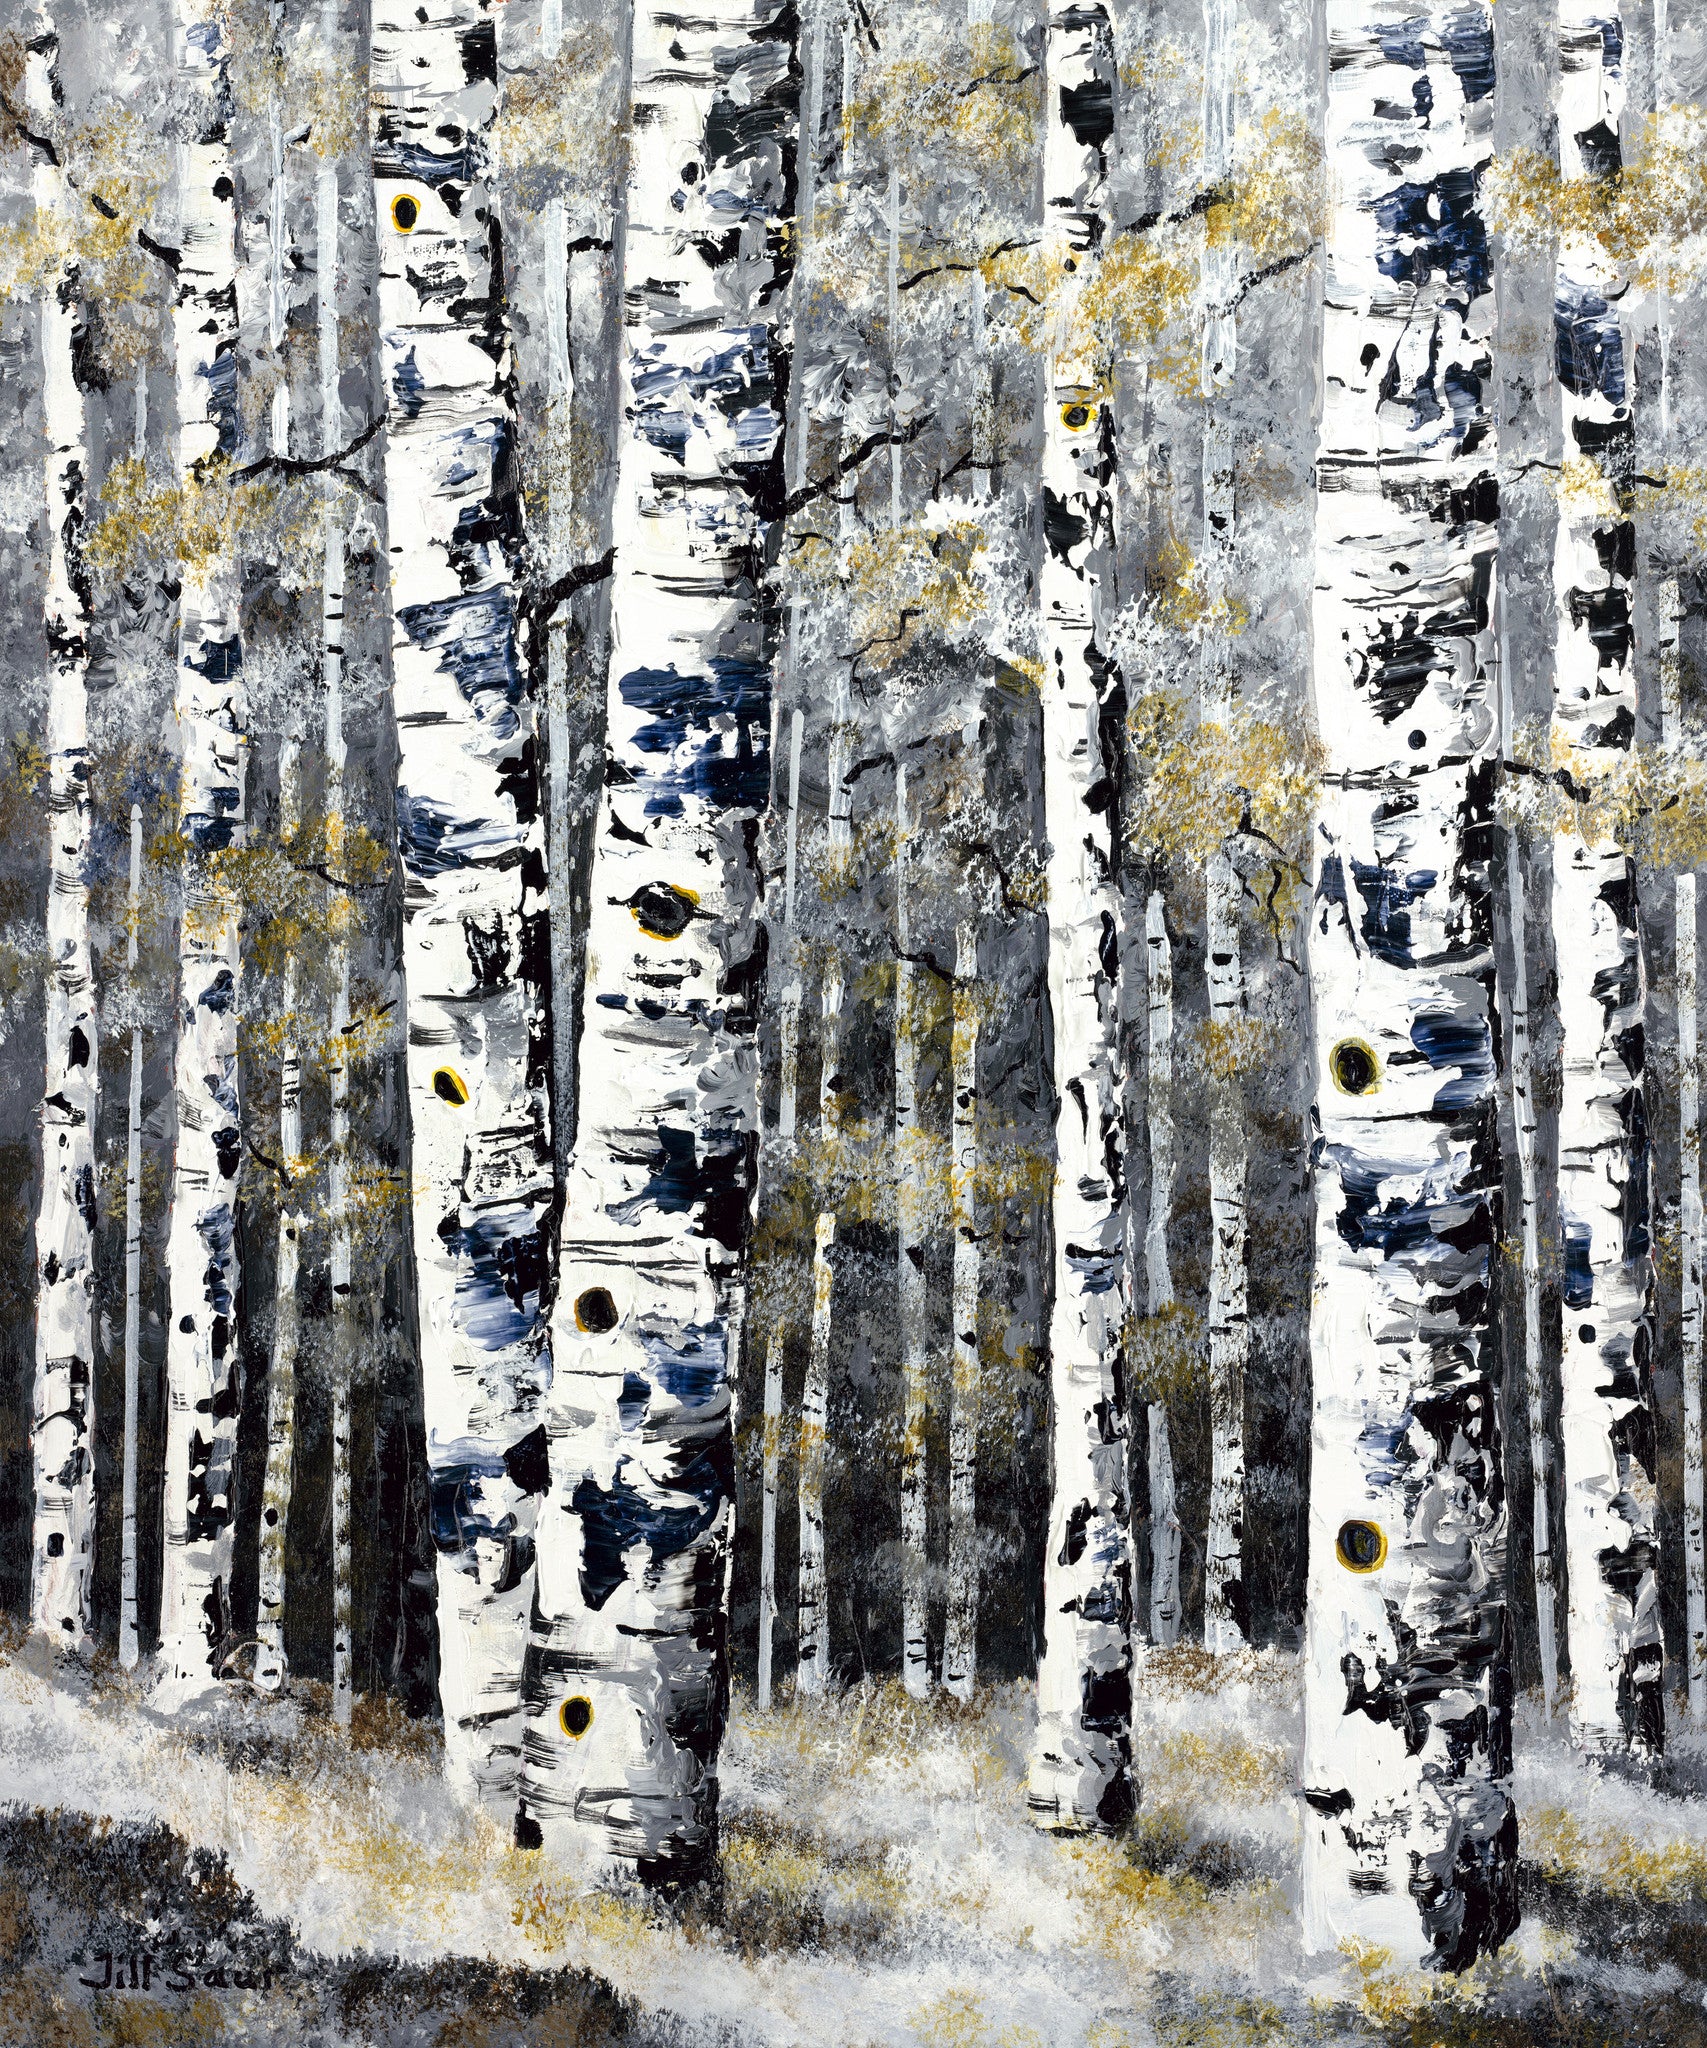 Winter Aspen Painting by Jill Saur